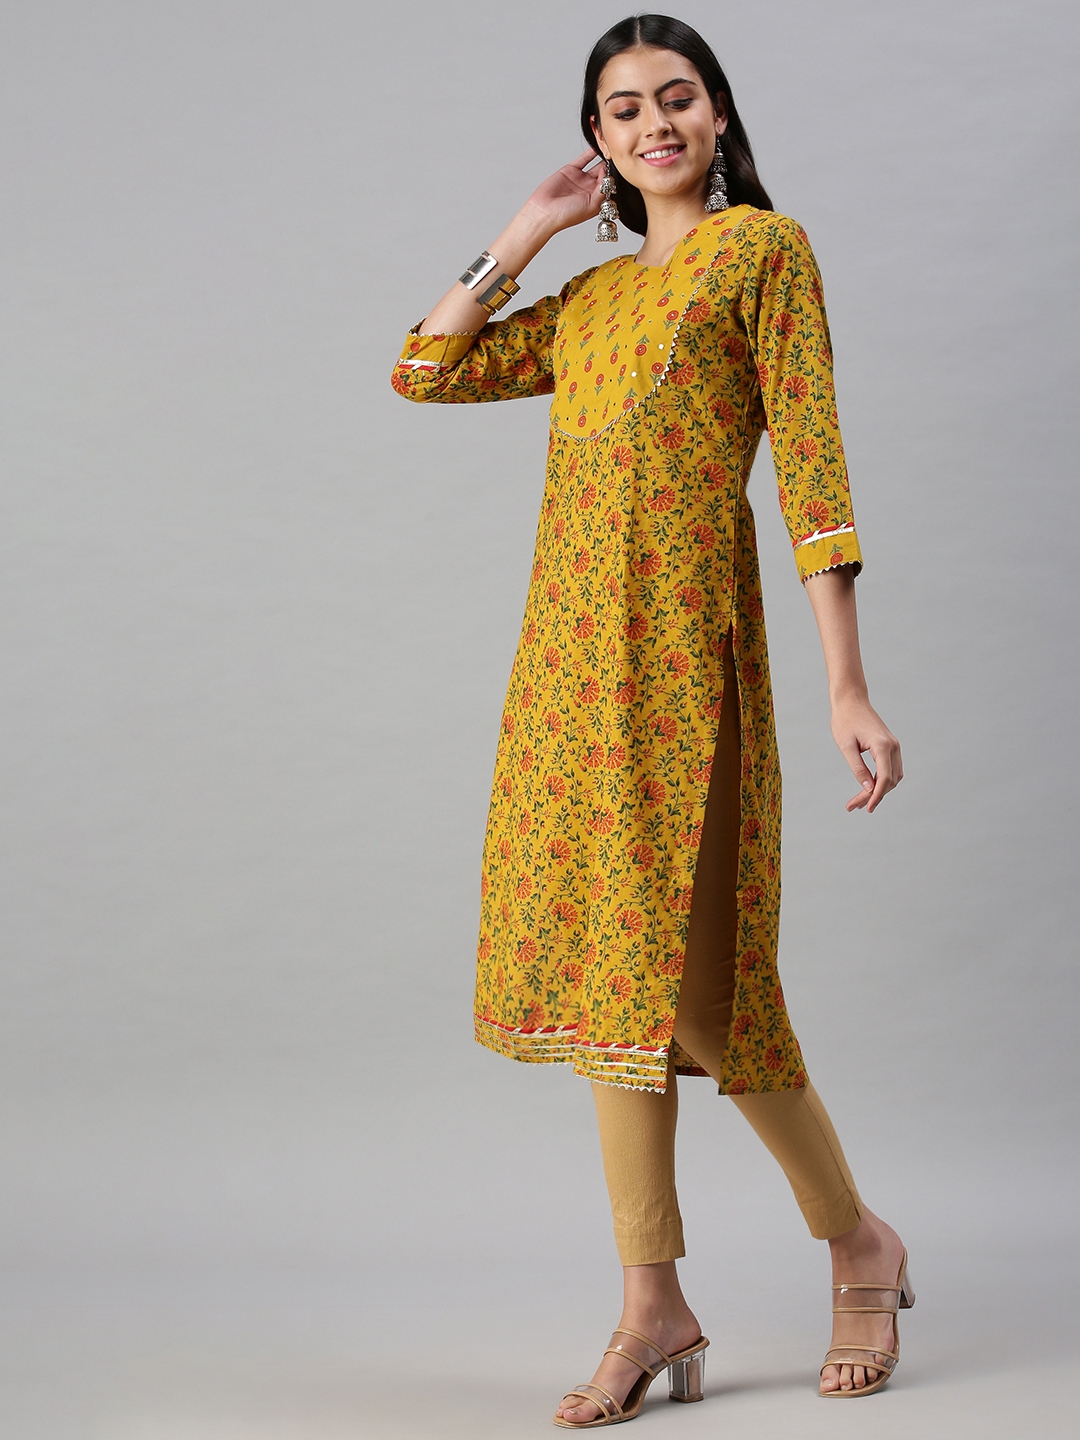 Women's Yellow Cotton Blend Printed Regular Kurtas